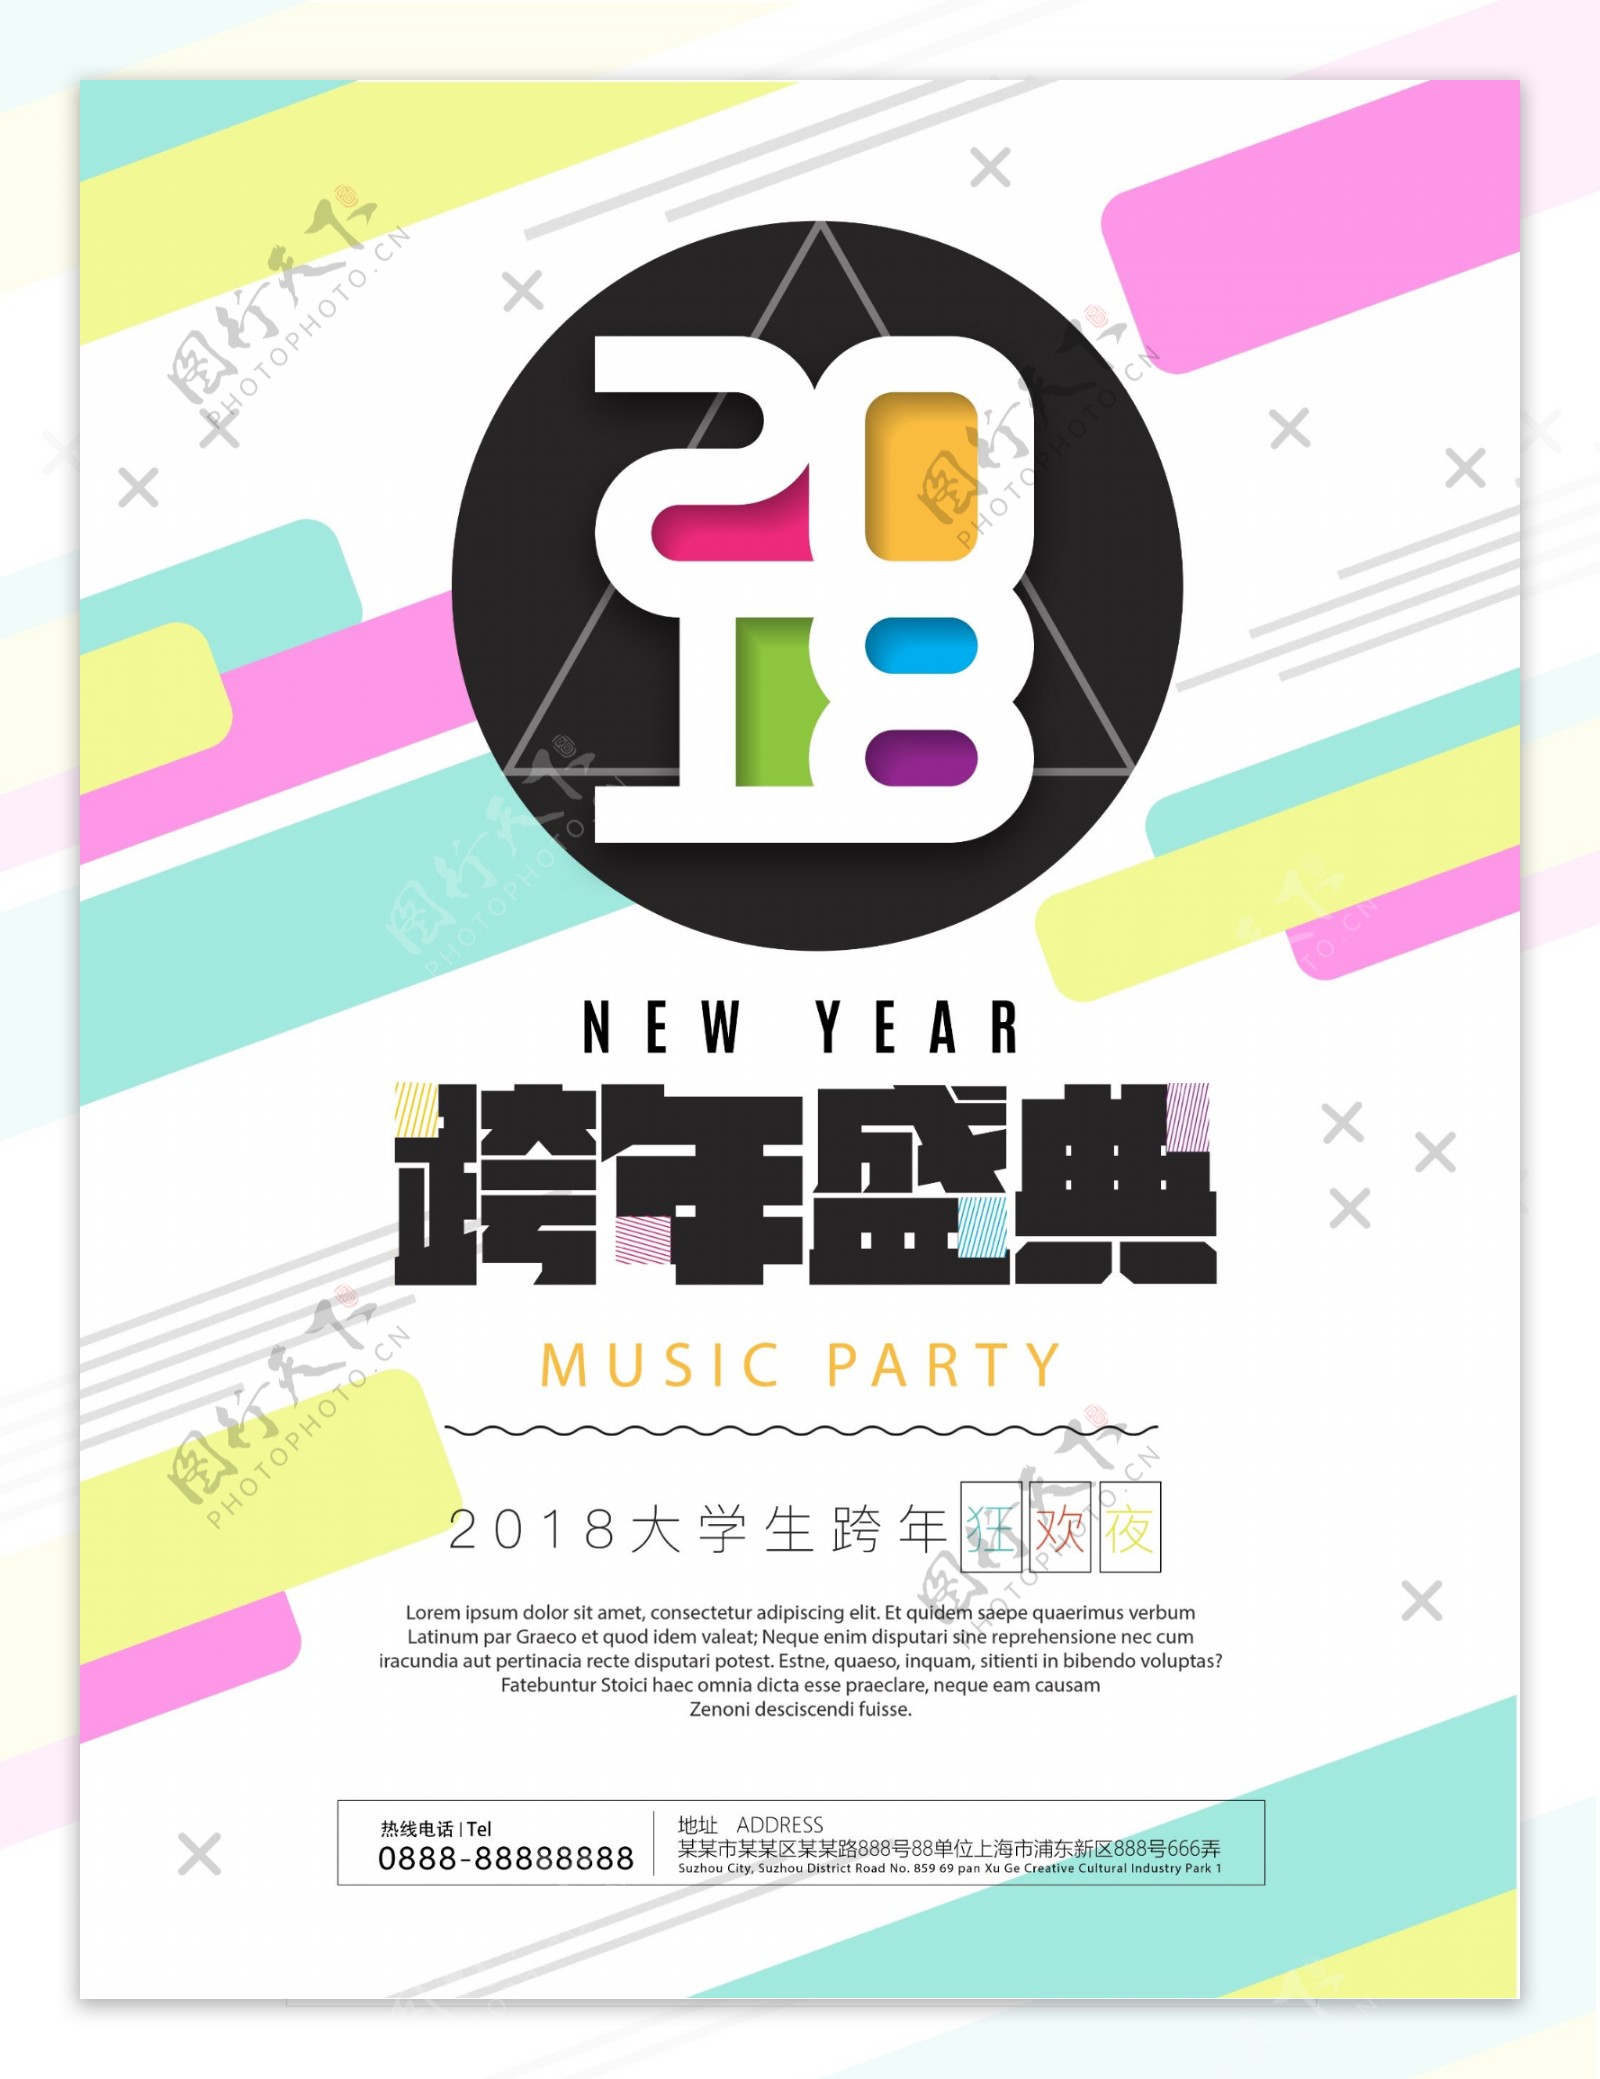 2018跨年盛典新年狂欢趴海报